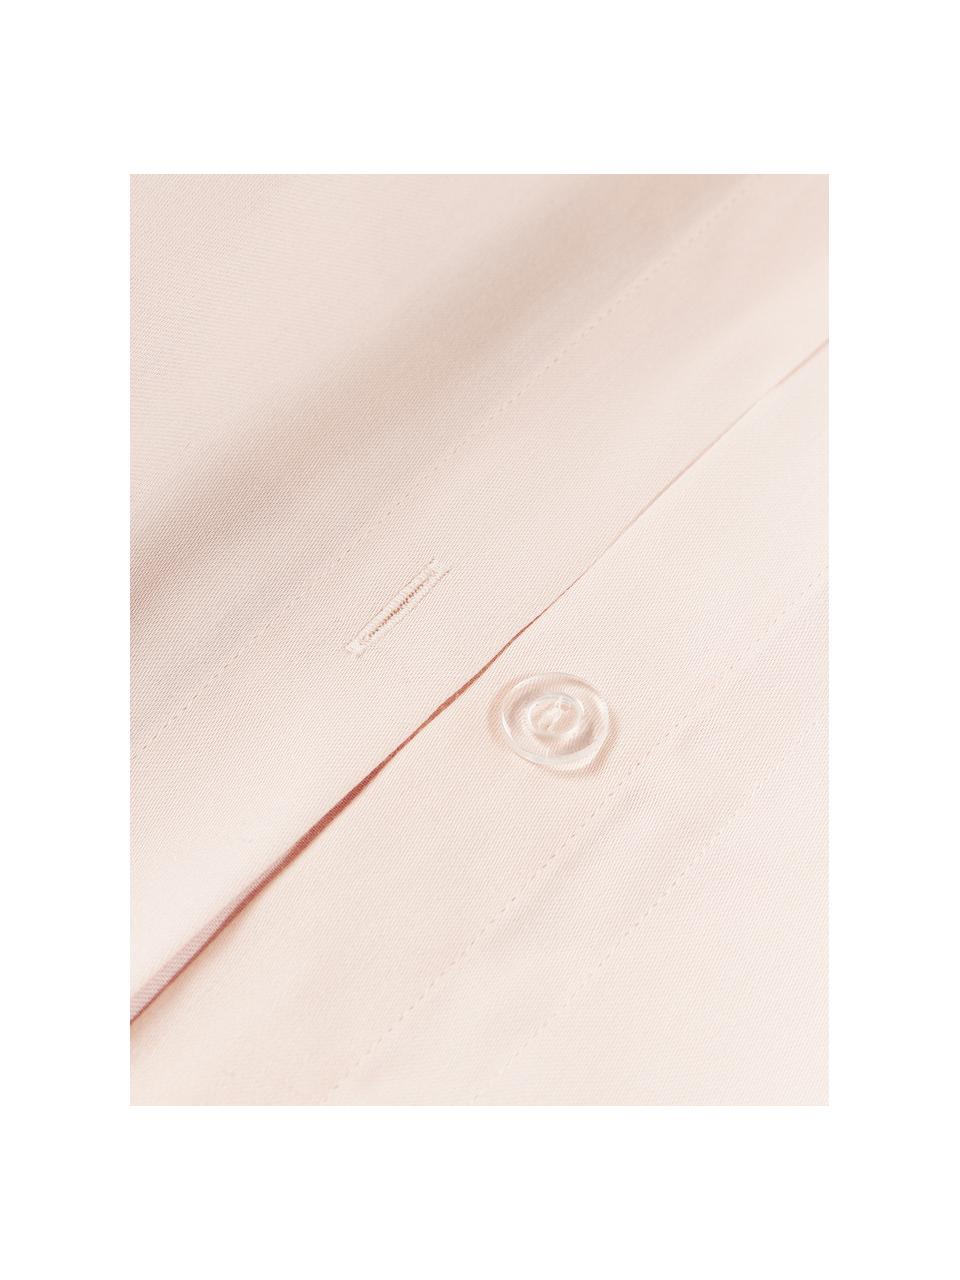 Copripiumino in raso di cotone a righe con orlo rialzato Brendan, Tonalità albicocca, Larg. 200 x Lung. 200 cm